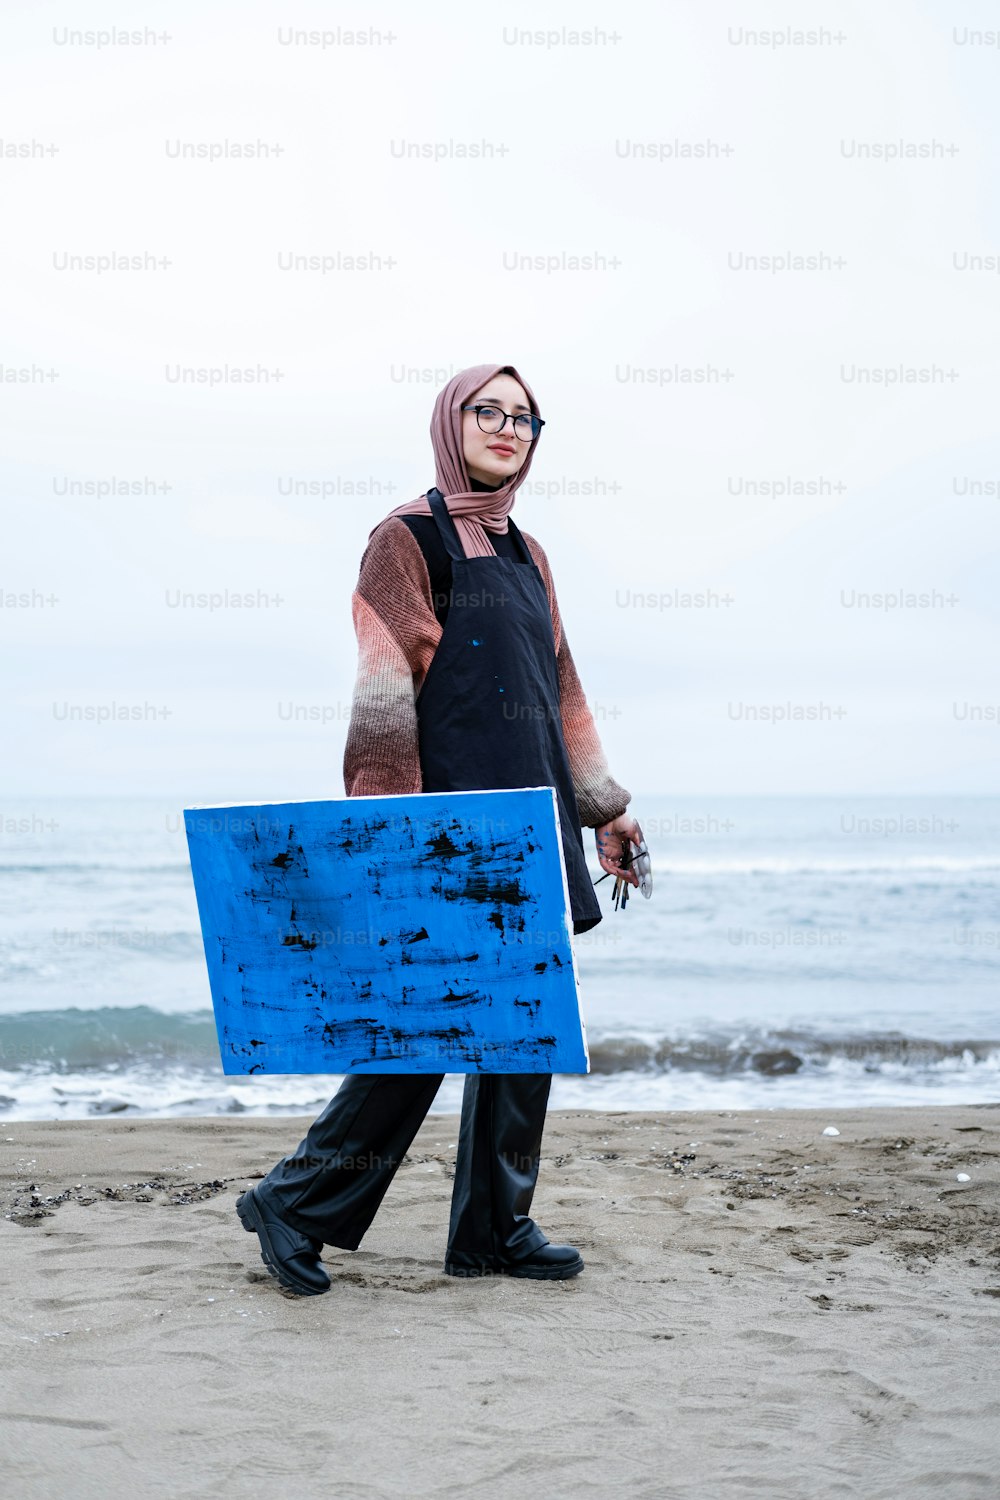 Una mujer caminando por una playa sosteniendo una tabla azul